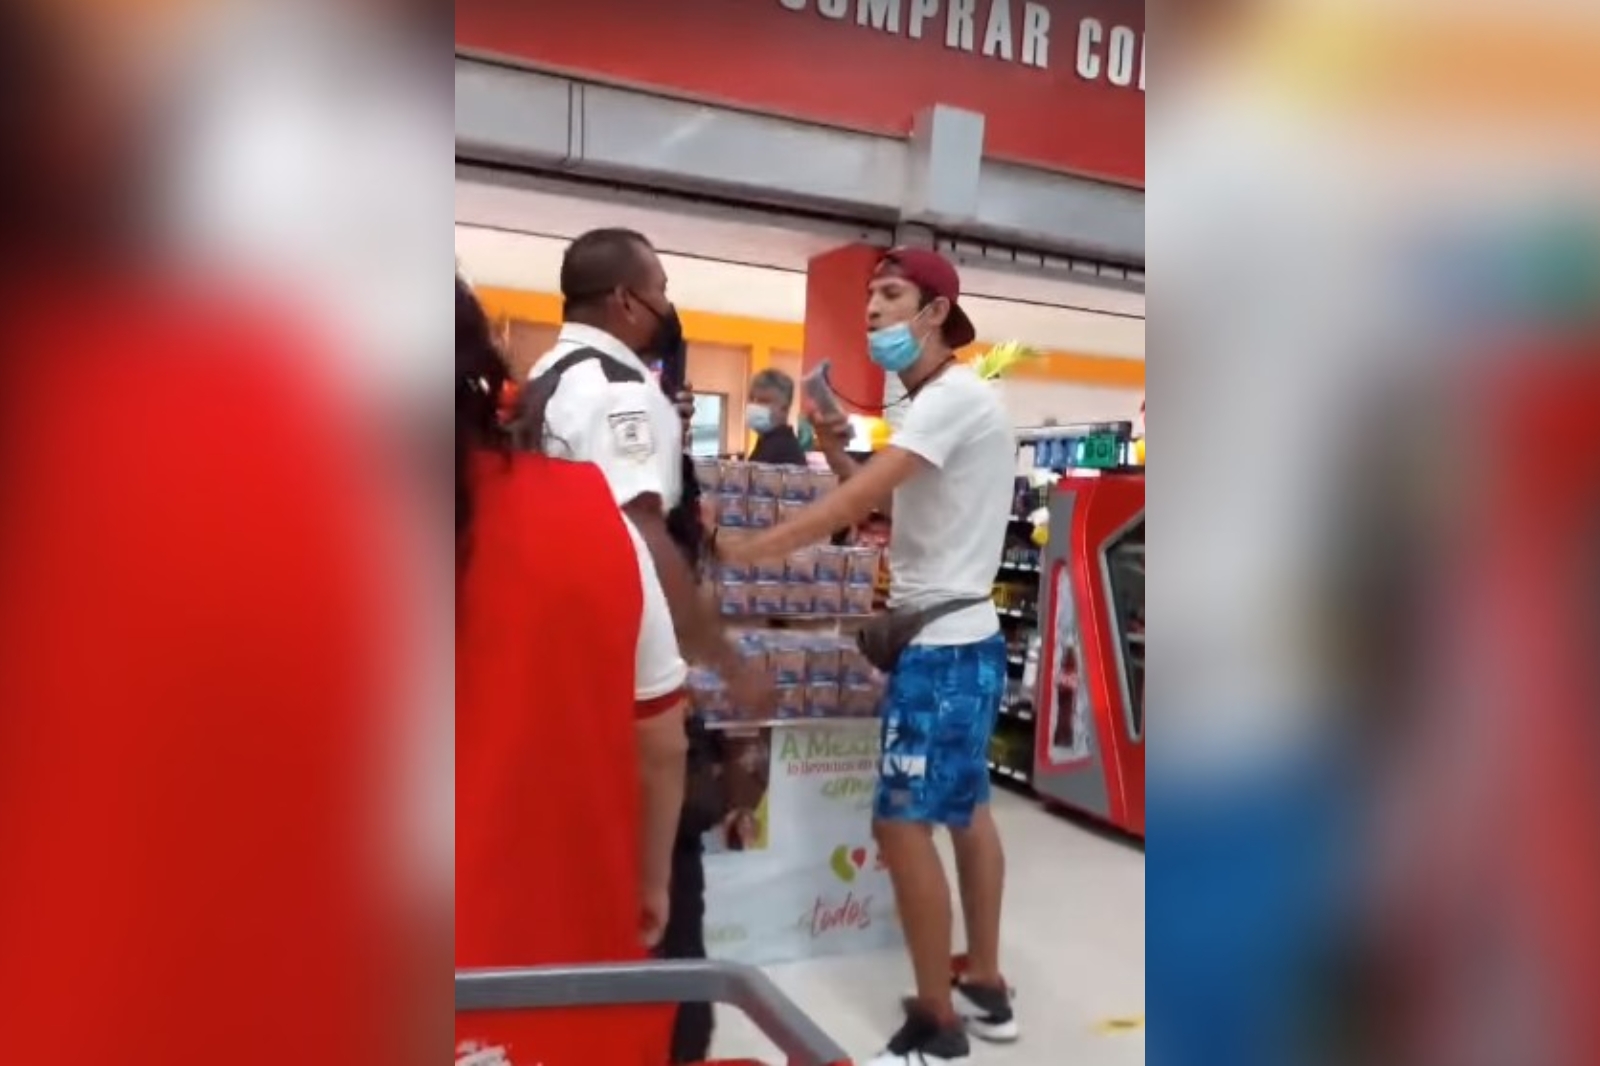 Guardias de seguridad 'agreden' a cliente en comercio de Playa del Carmen: VIDEO